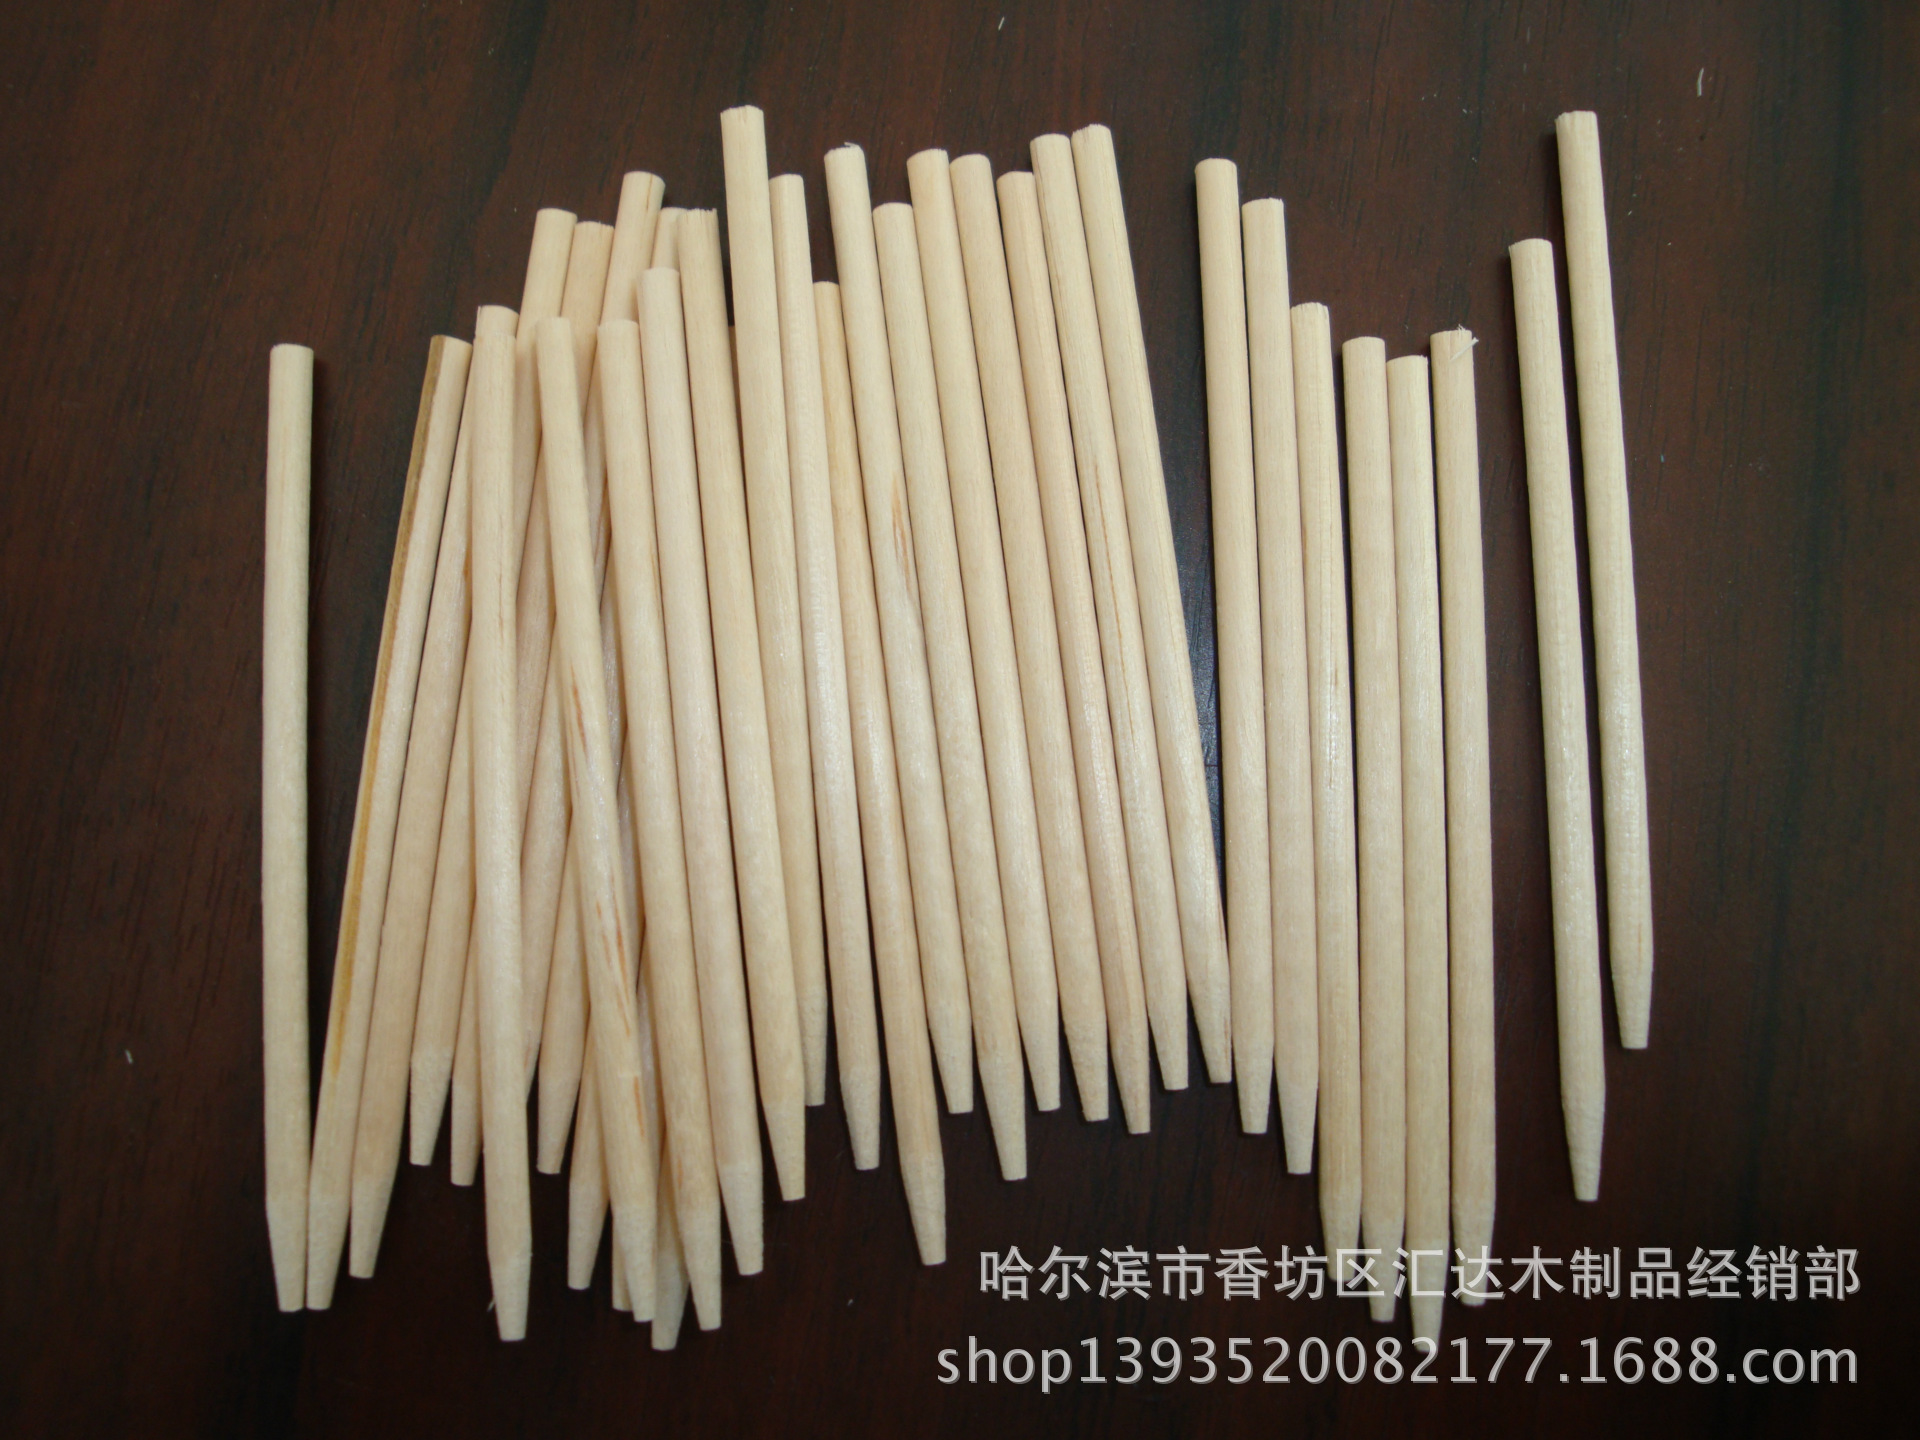 厂家供应棒糖棒 一次性圆棒糖棒 桦木棒糖棒 环保磨尖棒糖棒示例图2